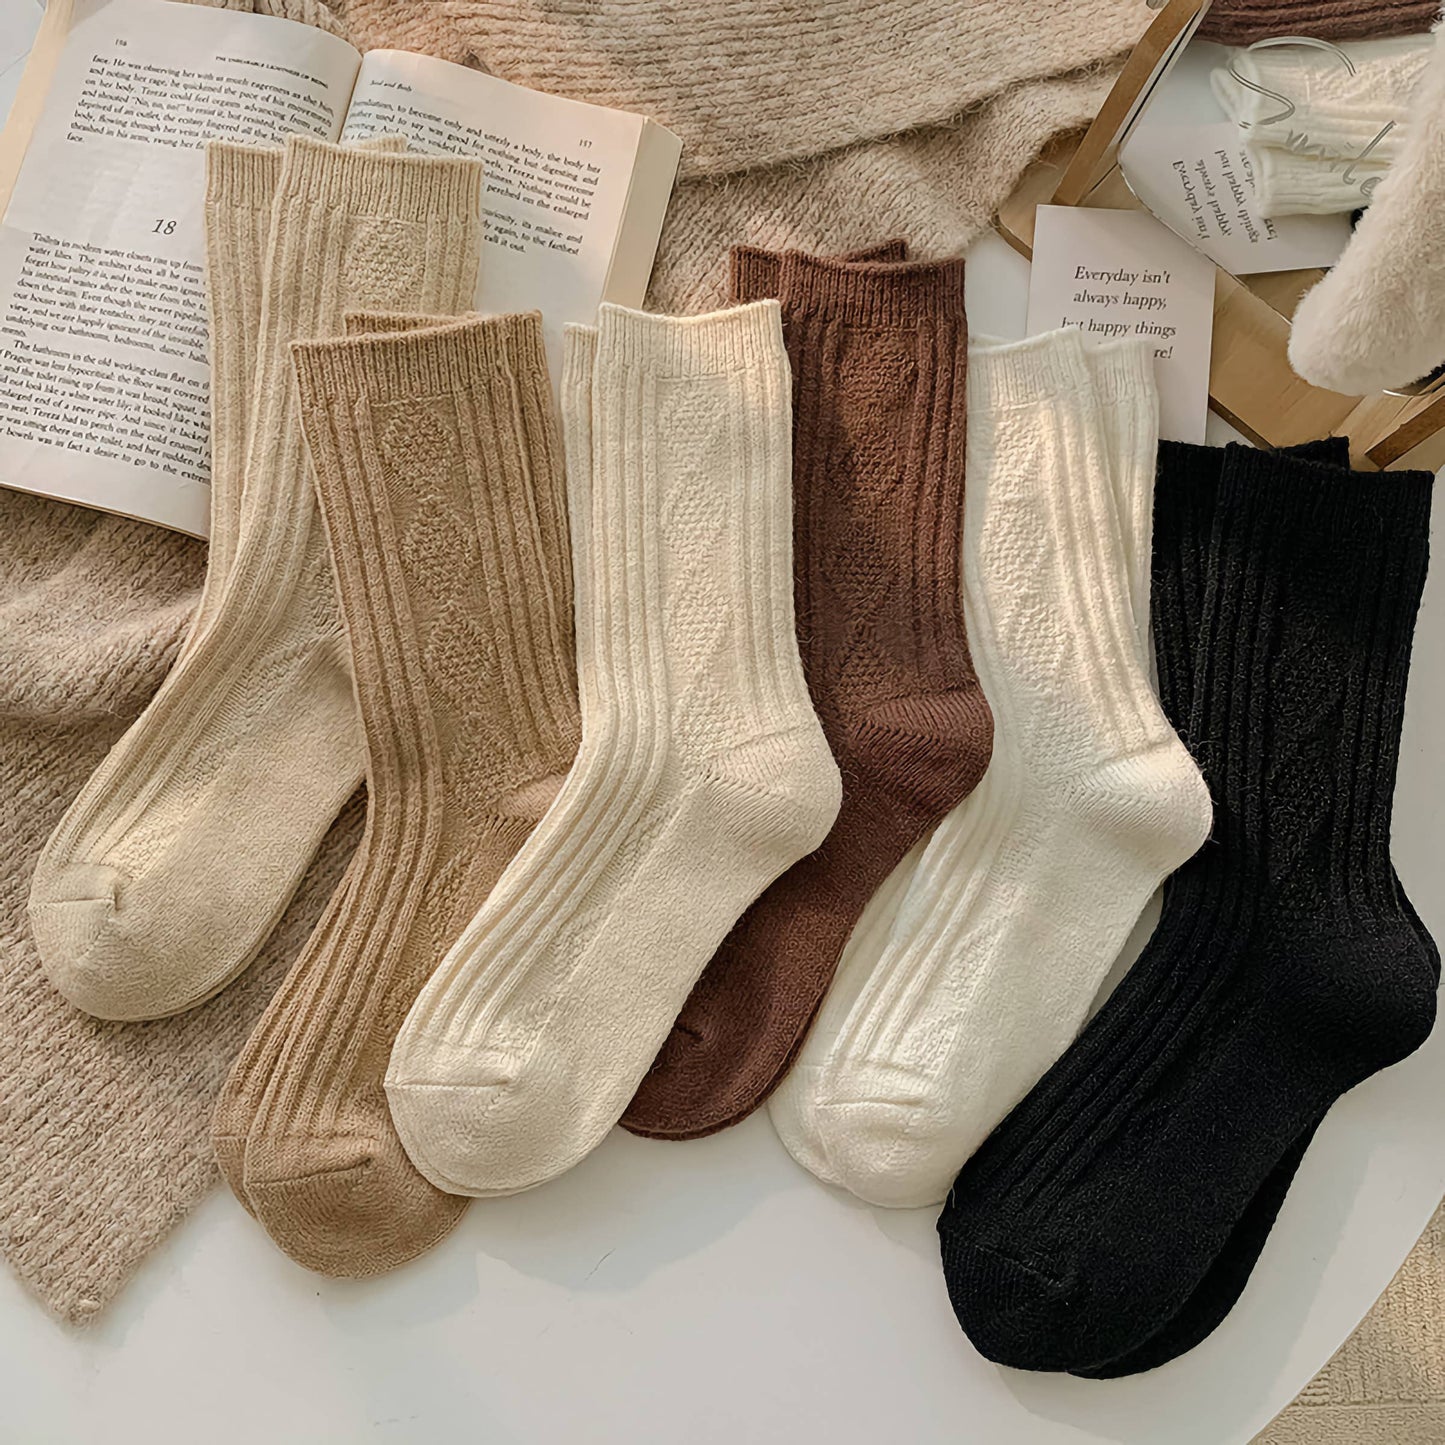 Warm Socks - Knitted Cashmere Crew Cozy Socks: Beige